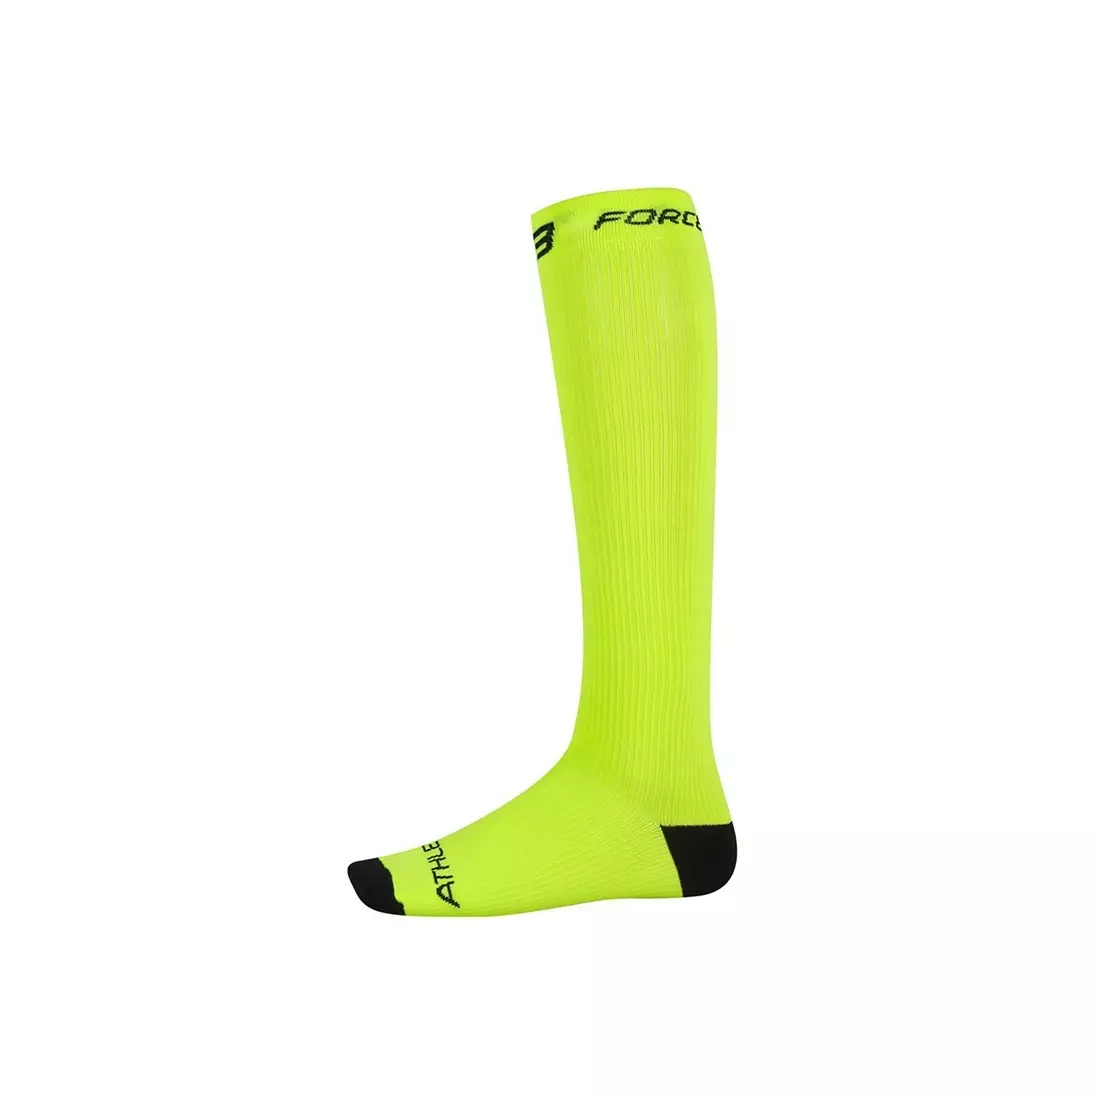 FORCE compression socks 90103, color: Fluor